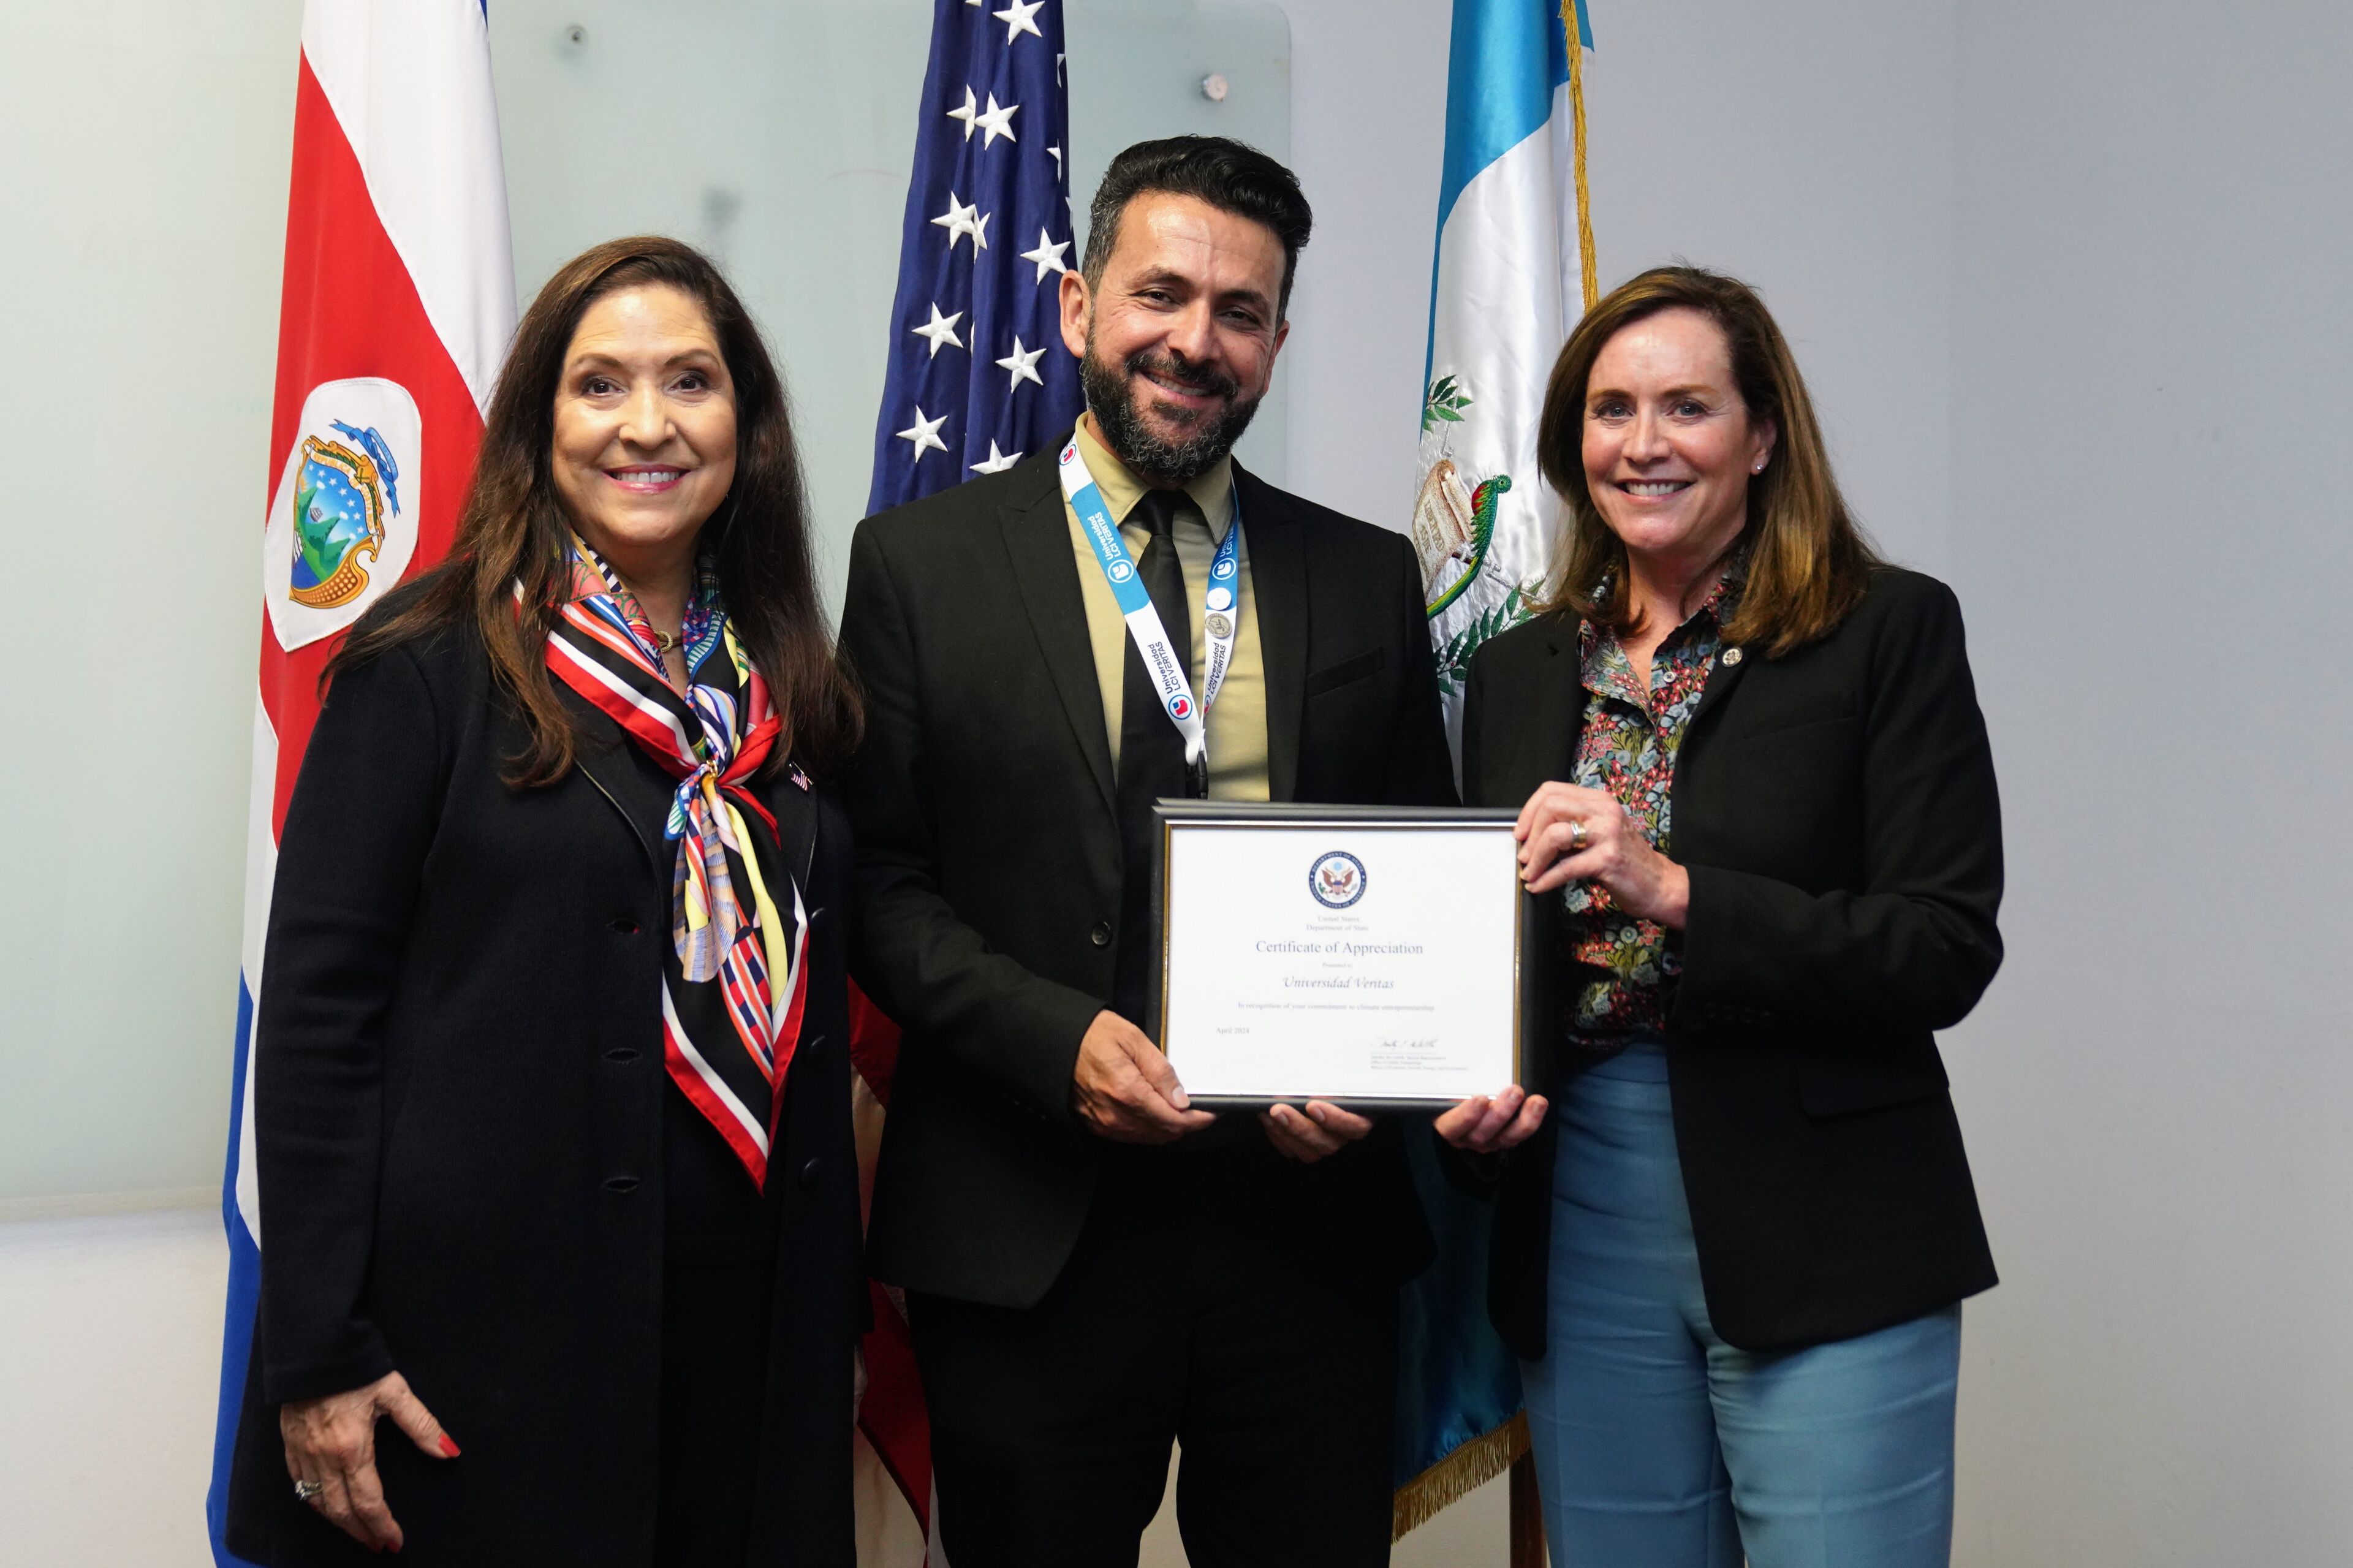 Esta imagen muestra una ceremonia de reconocimiento internacional. Tres personas, incluyendo dos mujeres y un hombre, están juntos, sonriendo. El hombre sostiene un Certificado de Apreciación enmarcado. Detrás de ellos están las banderas de Costa Rica, Estados Unidos y Guatemala, lo que indica el contexto internacional.